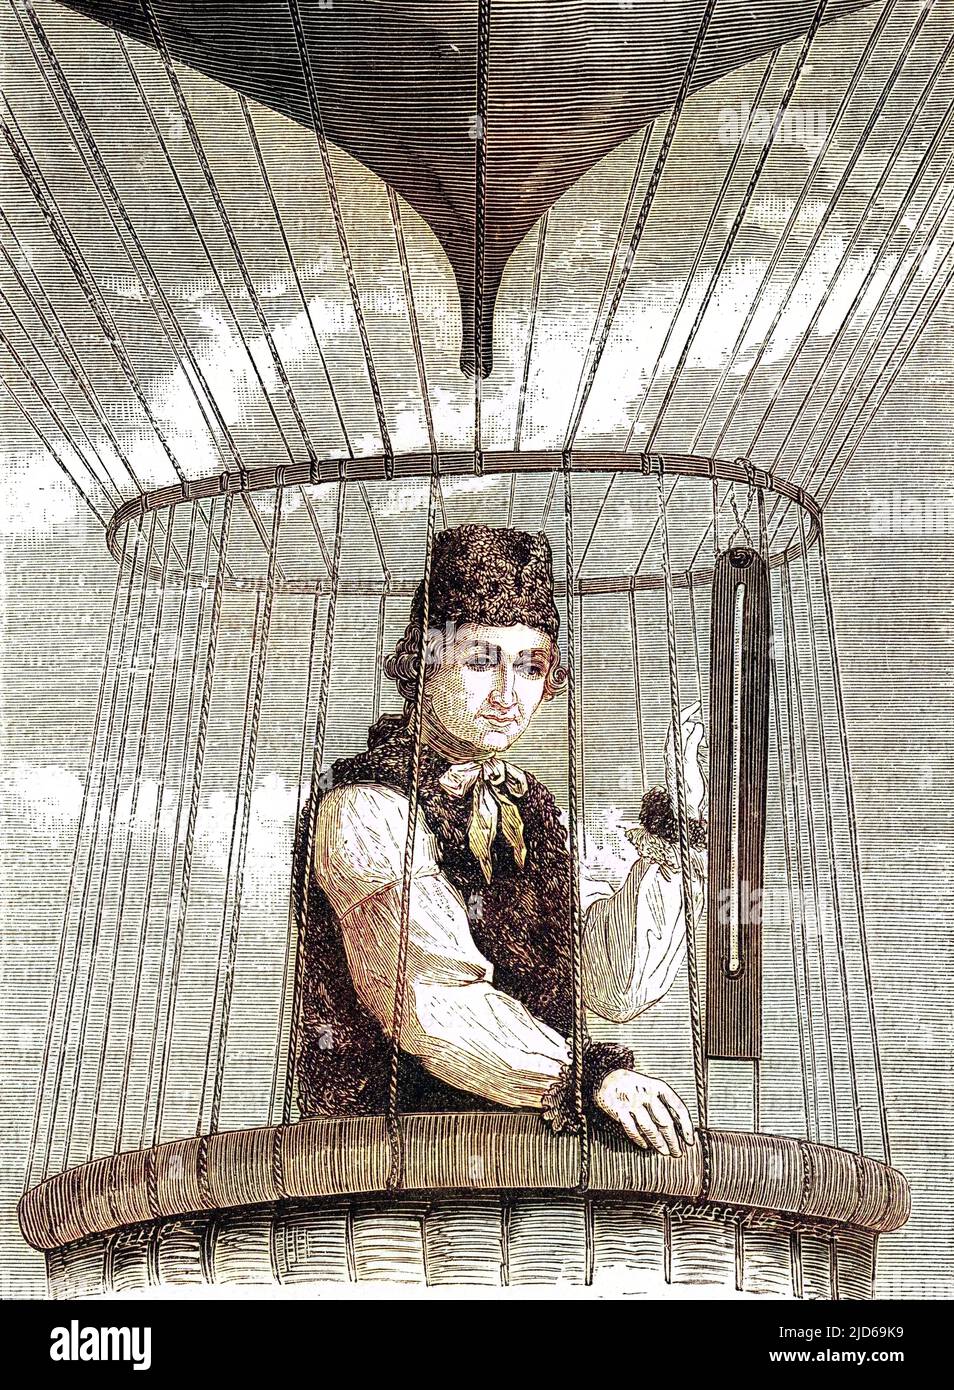 JOHN JEFFRIES amerikanischer Arzt und unerschrockener Ballonfahrer. Kolorierte Version von : 10161836 Datum: 1744 - 1819 Stockfoto